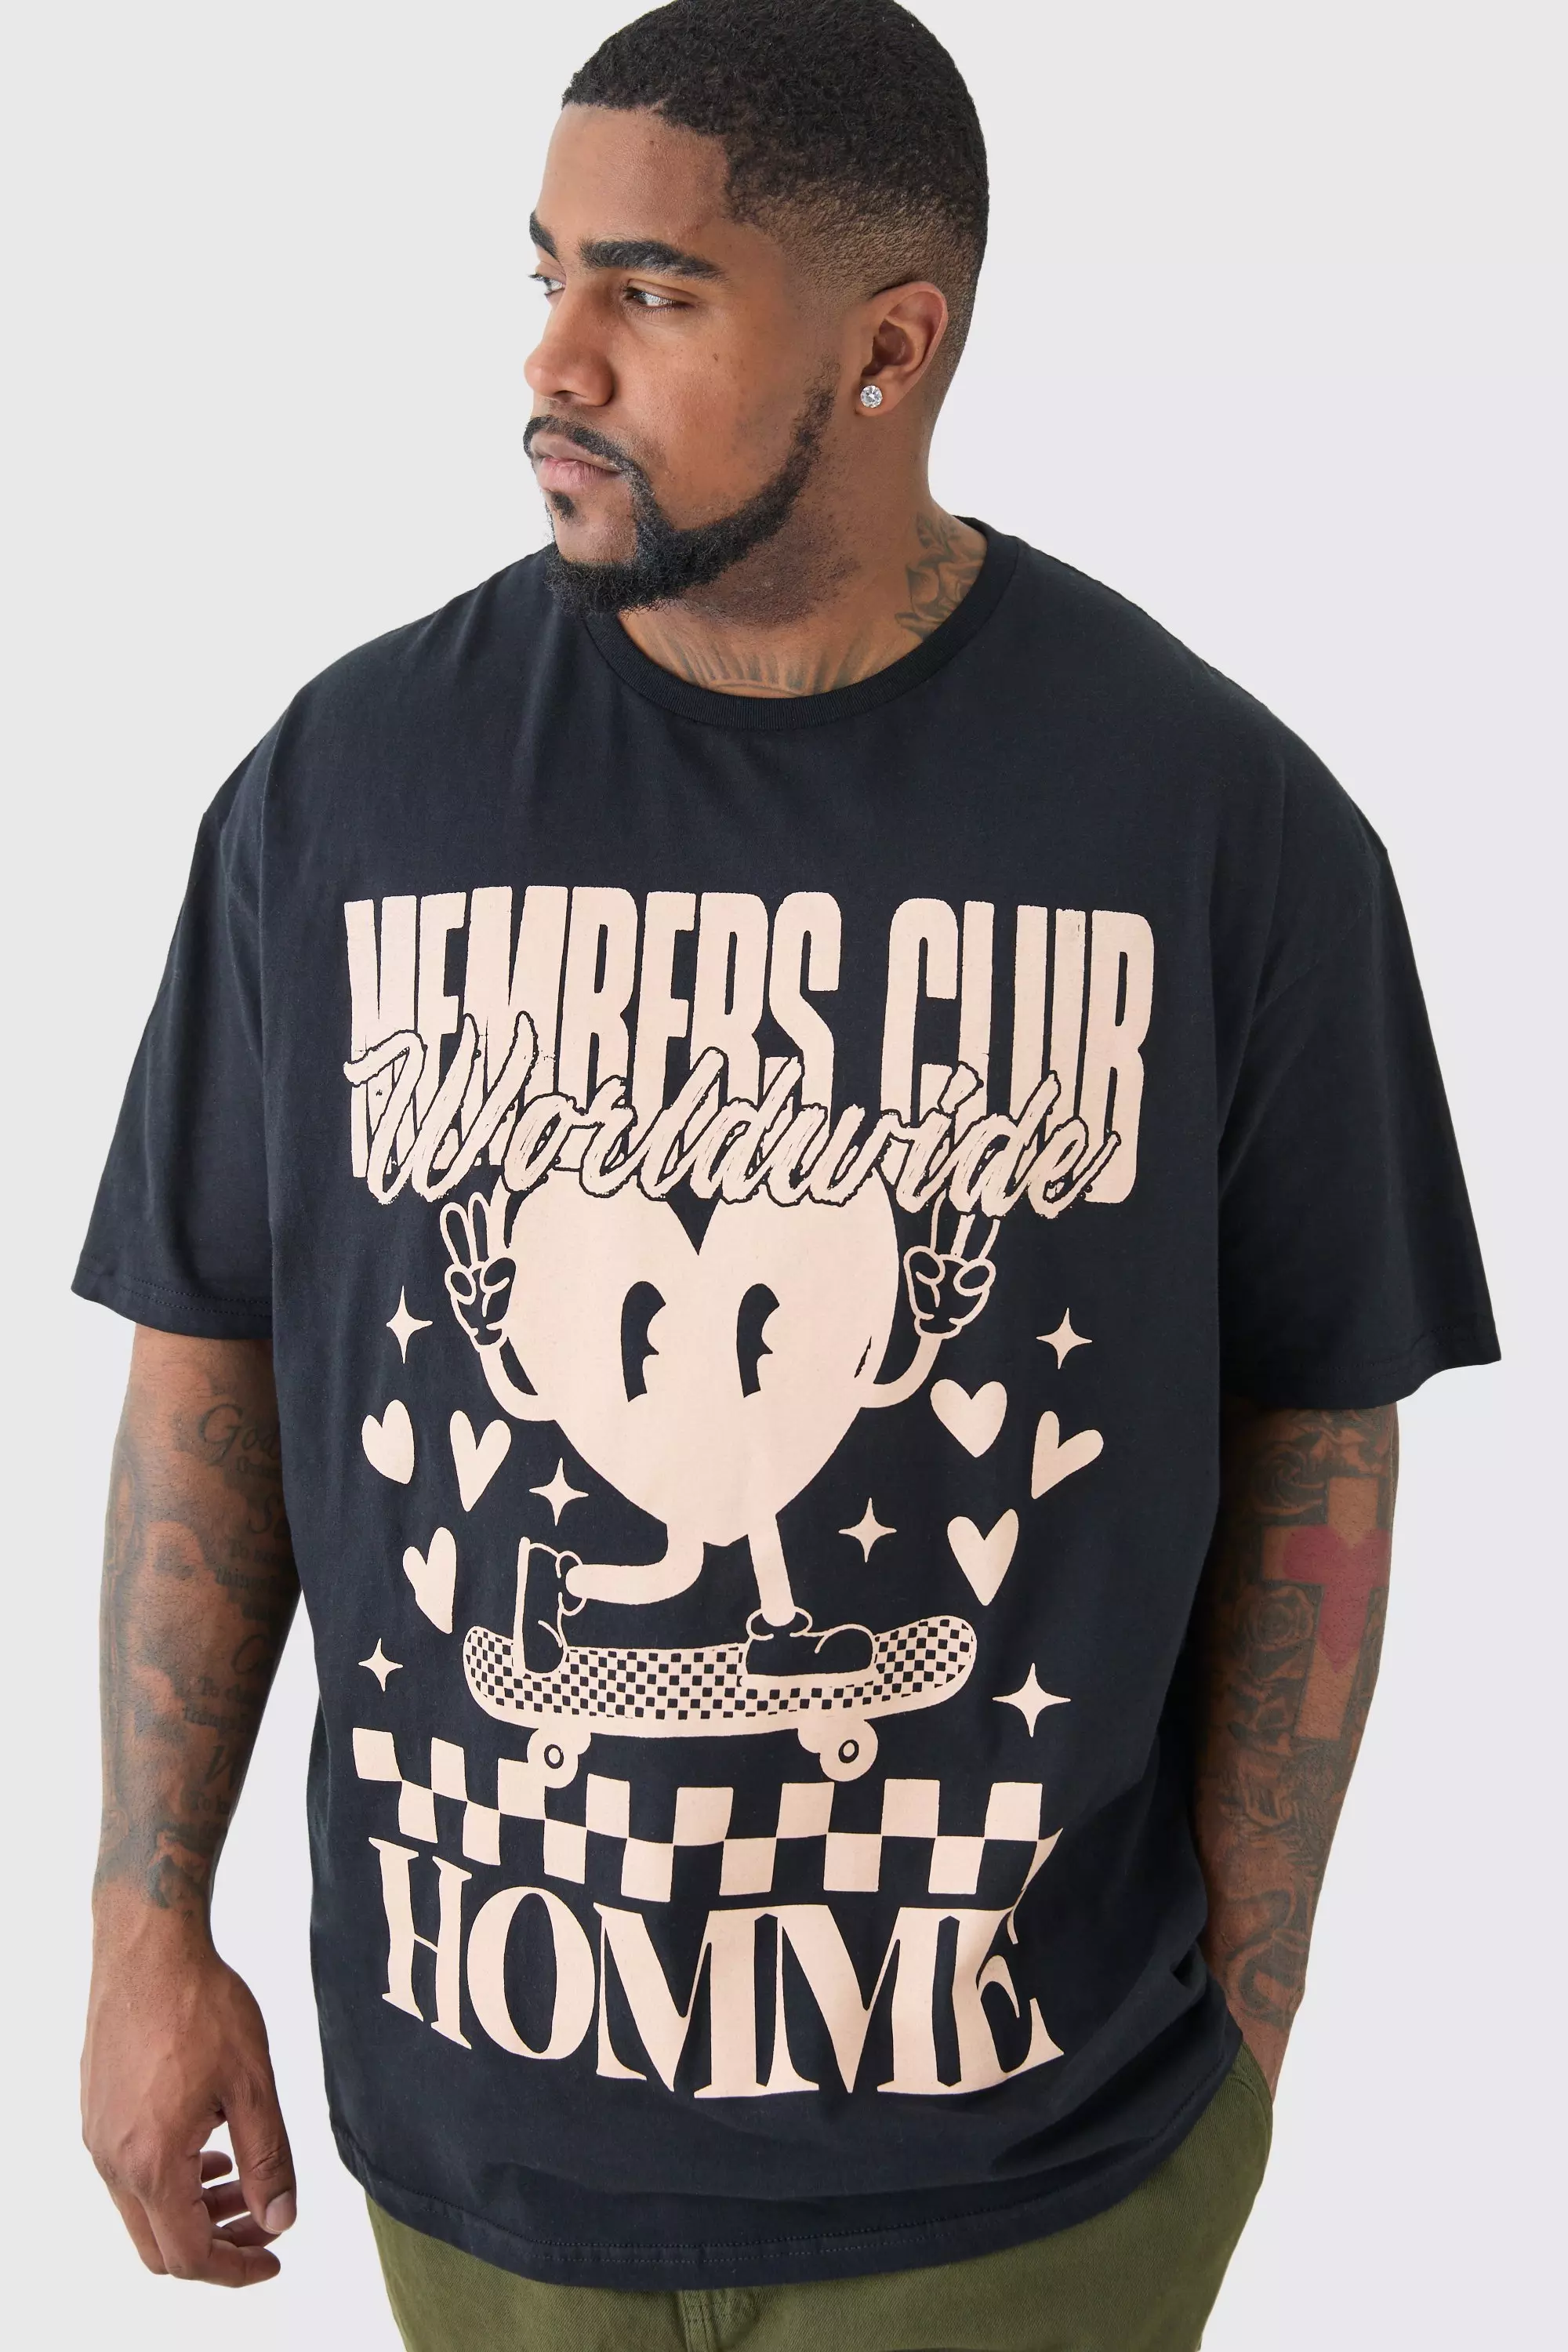 Plus Members Club Worldwide T-shirt In Black Black